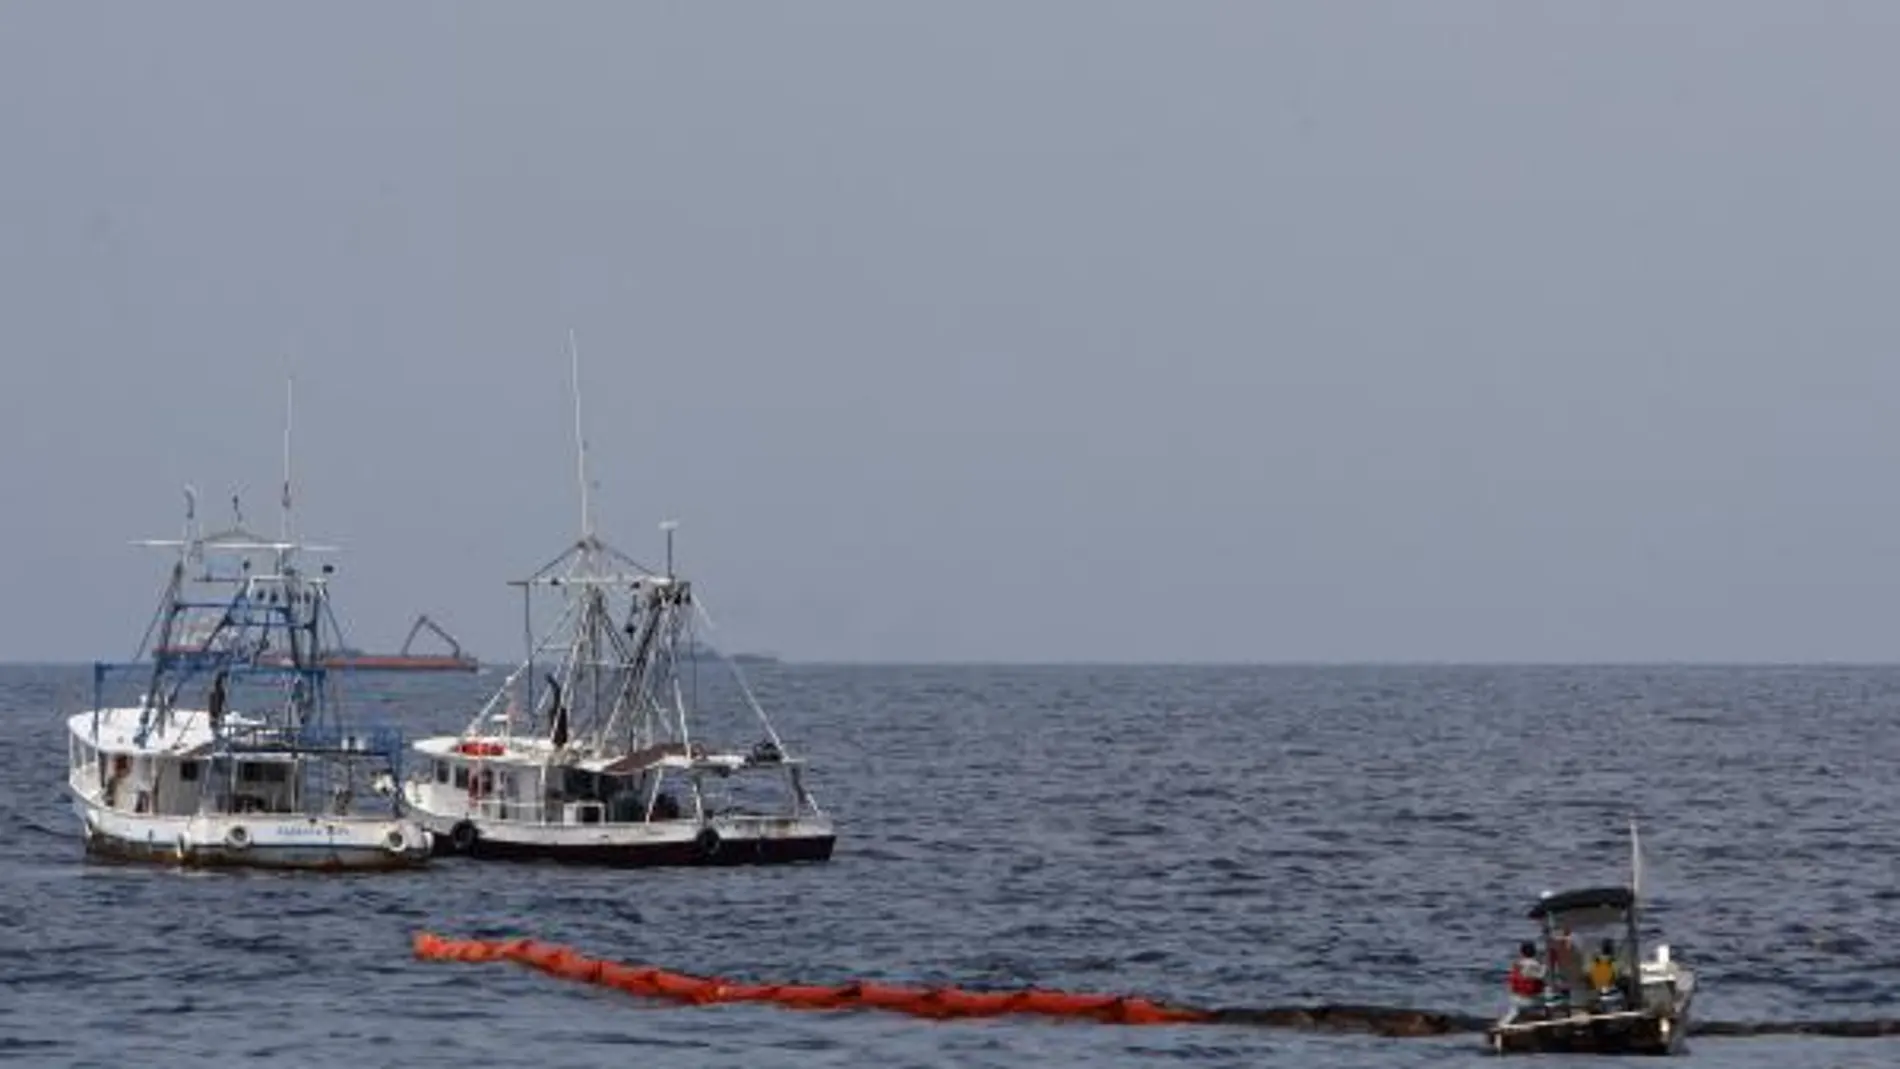 Dos barcos pesqueros colocan una barrera resistente al fuego antes de realizar una quema controlada de crudo en el Golfo de México